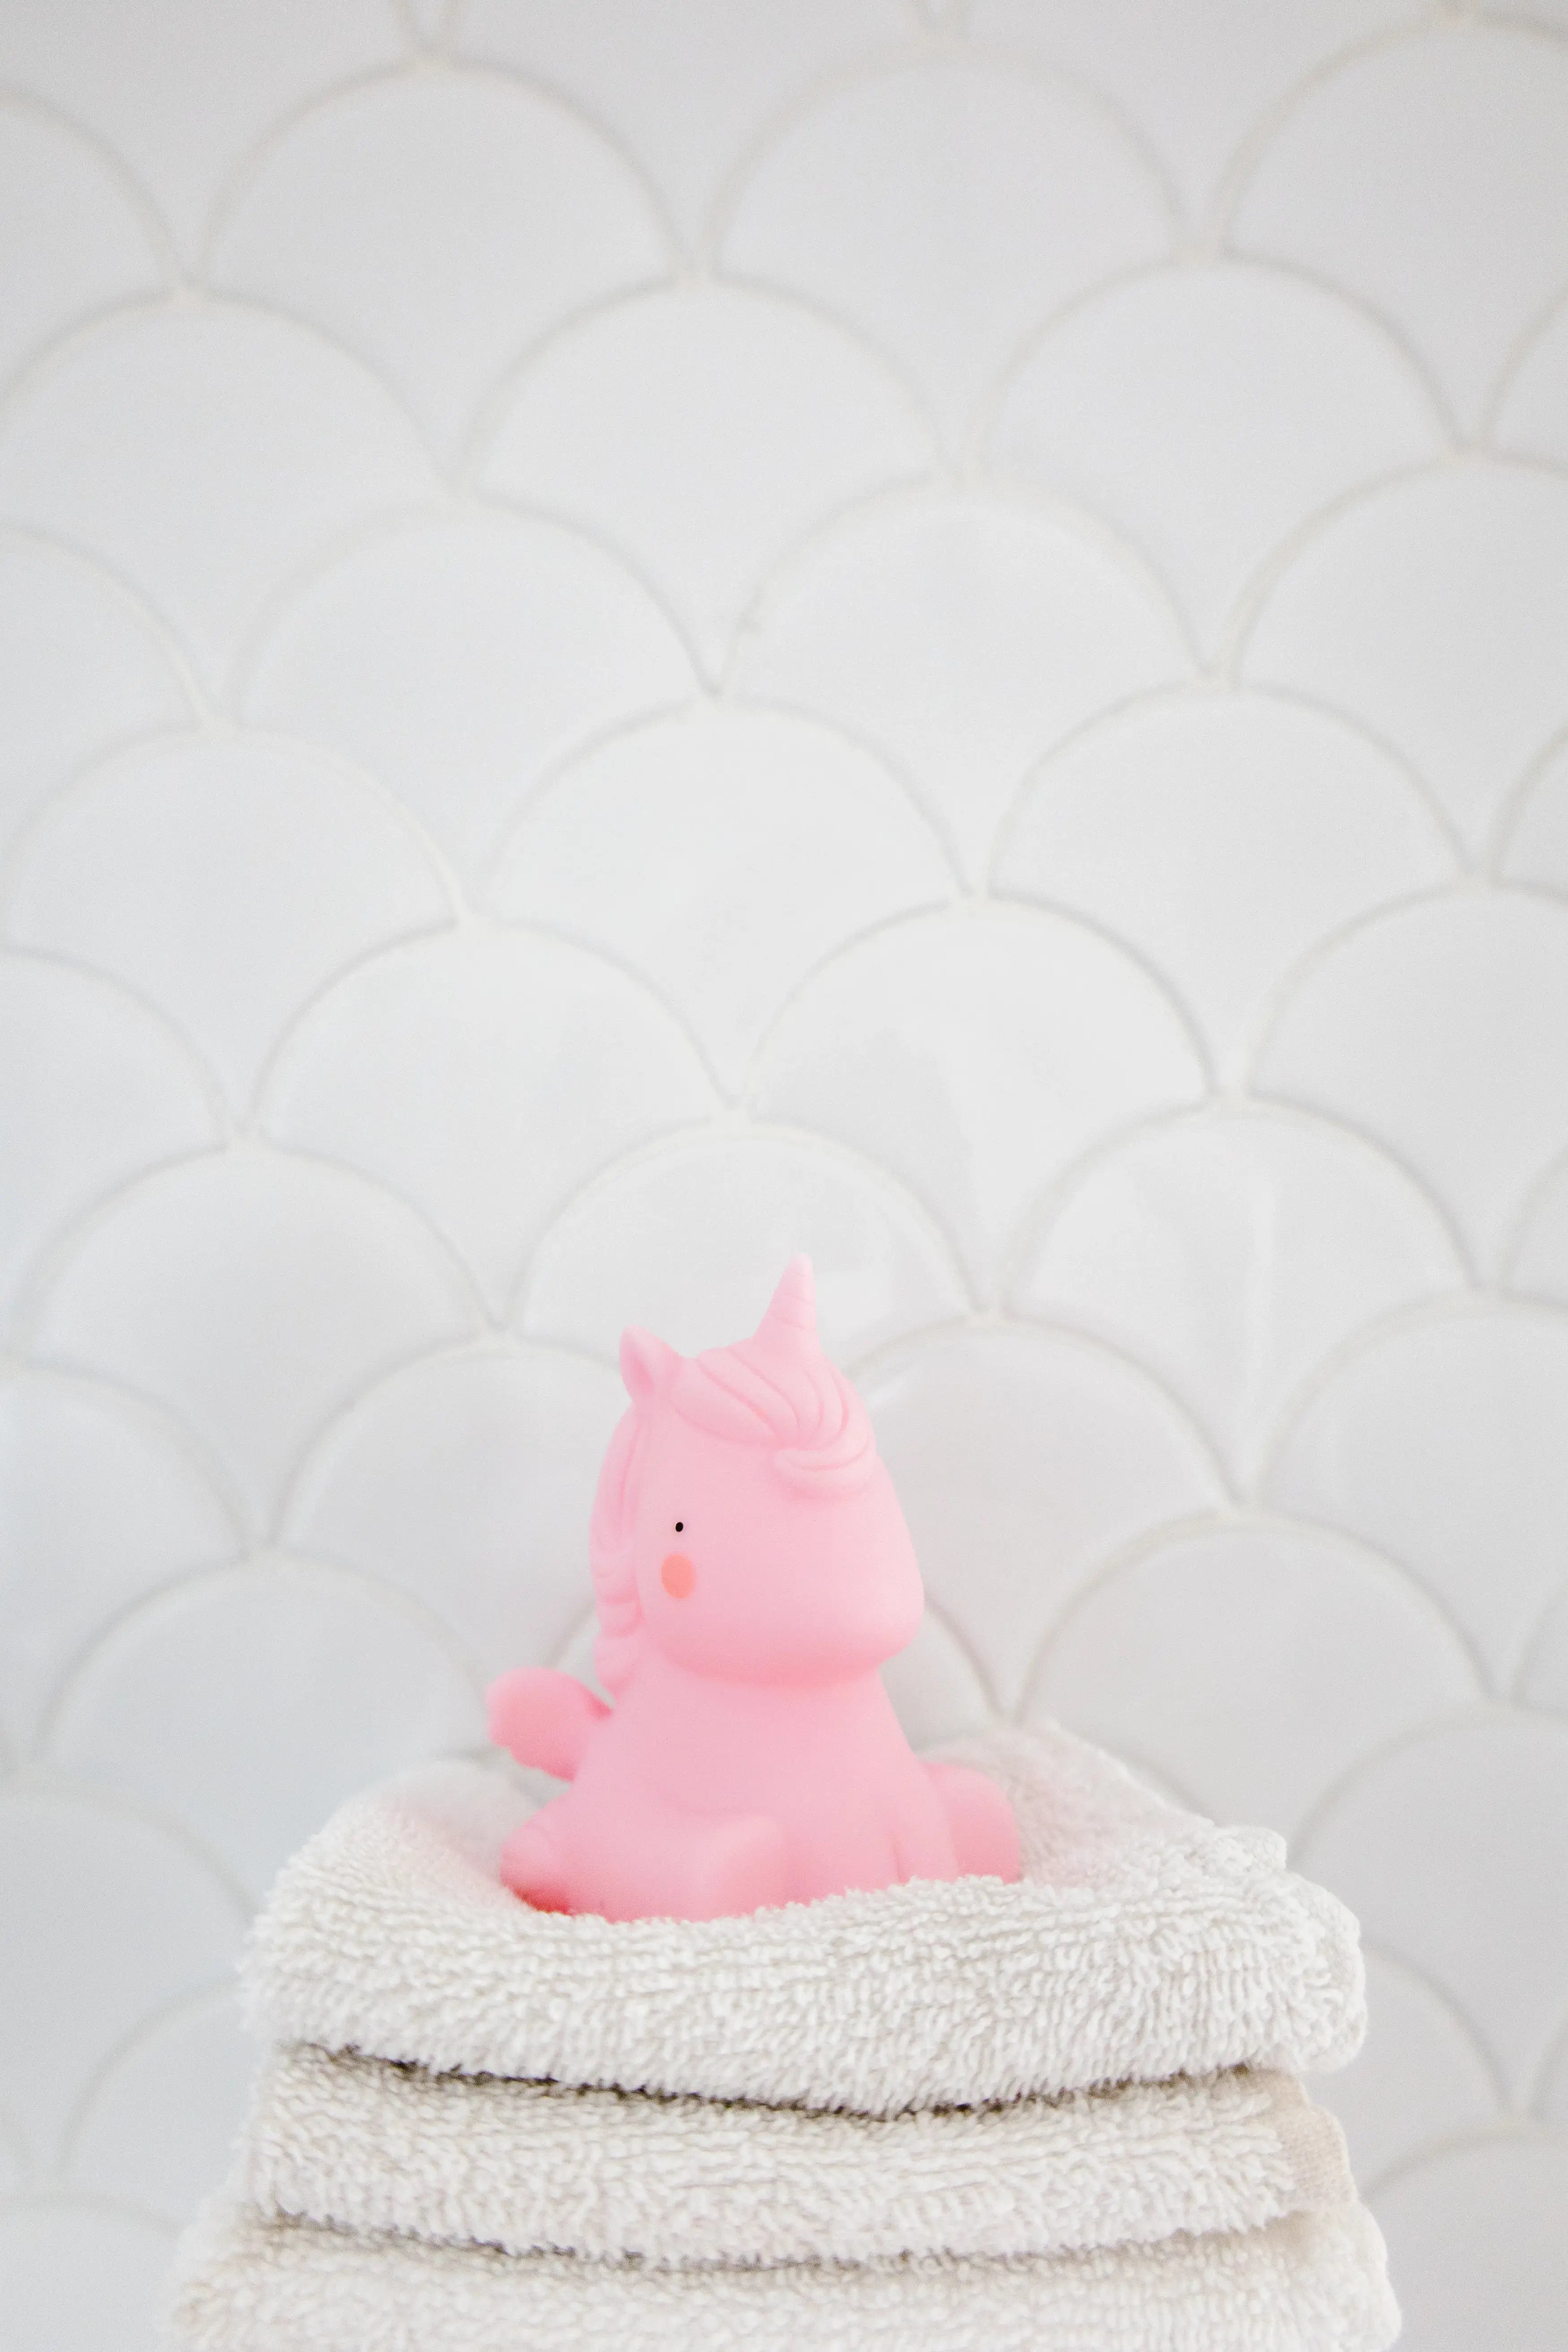 unicorn bath toy sitting on towels